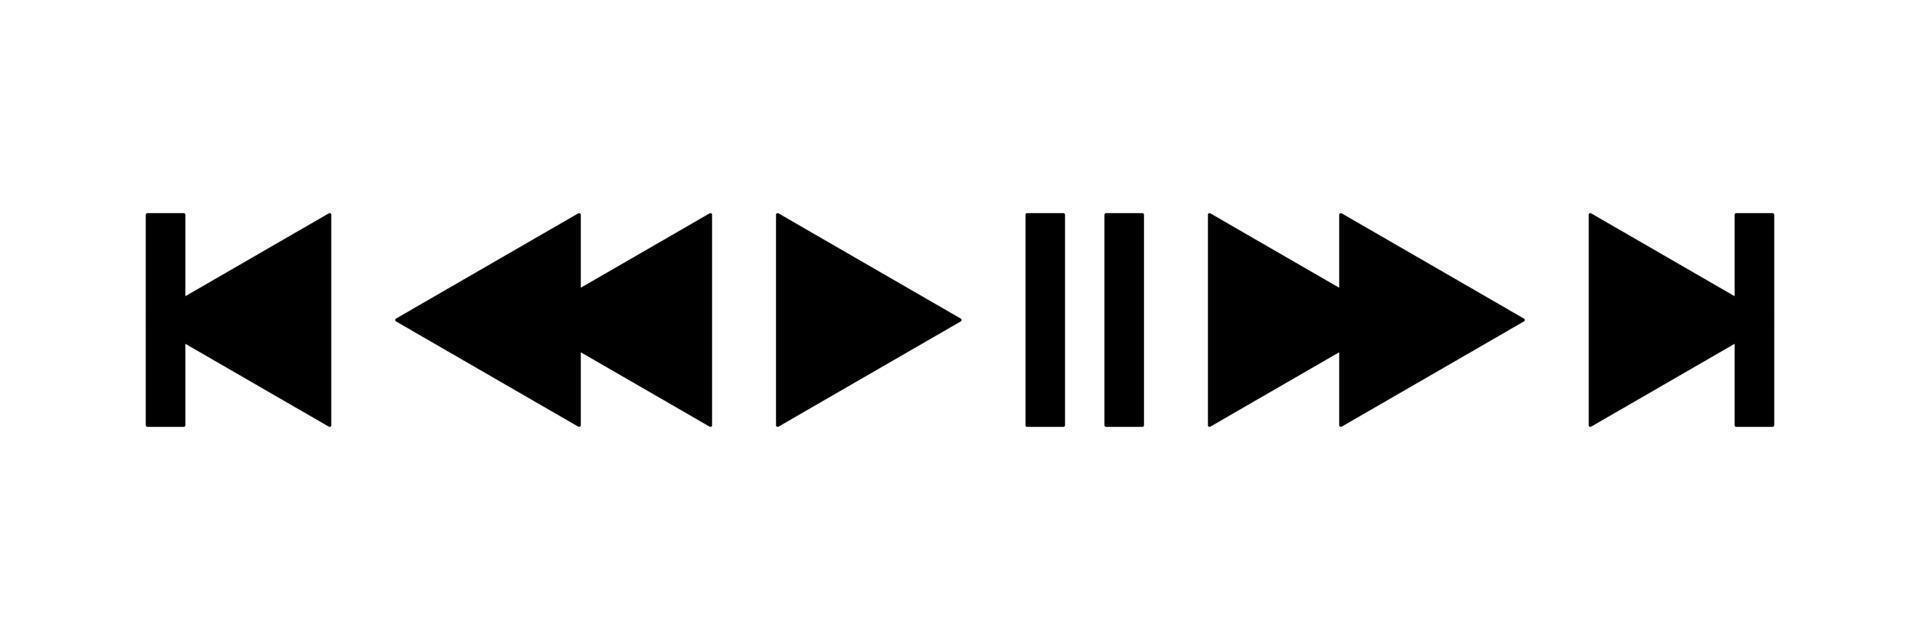 ensemble d'icônes de bouton de lecteur de musique dans un style plat isolé sur fond blanc. vecteur